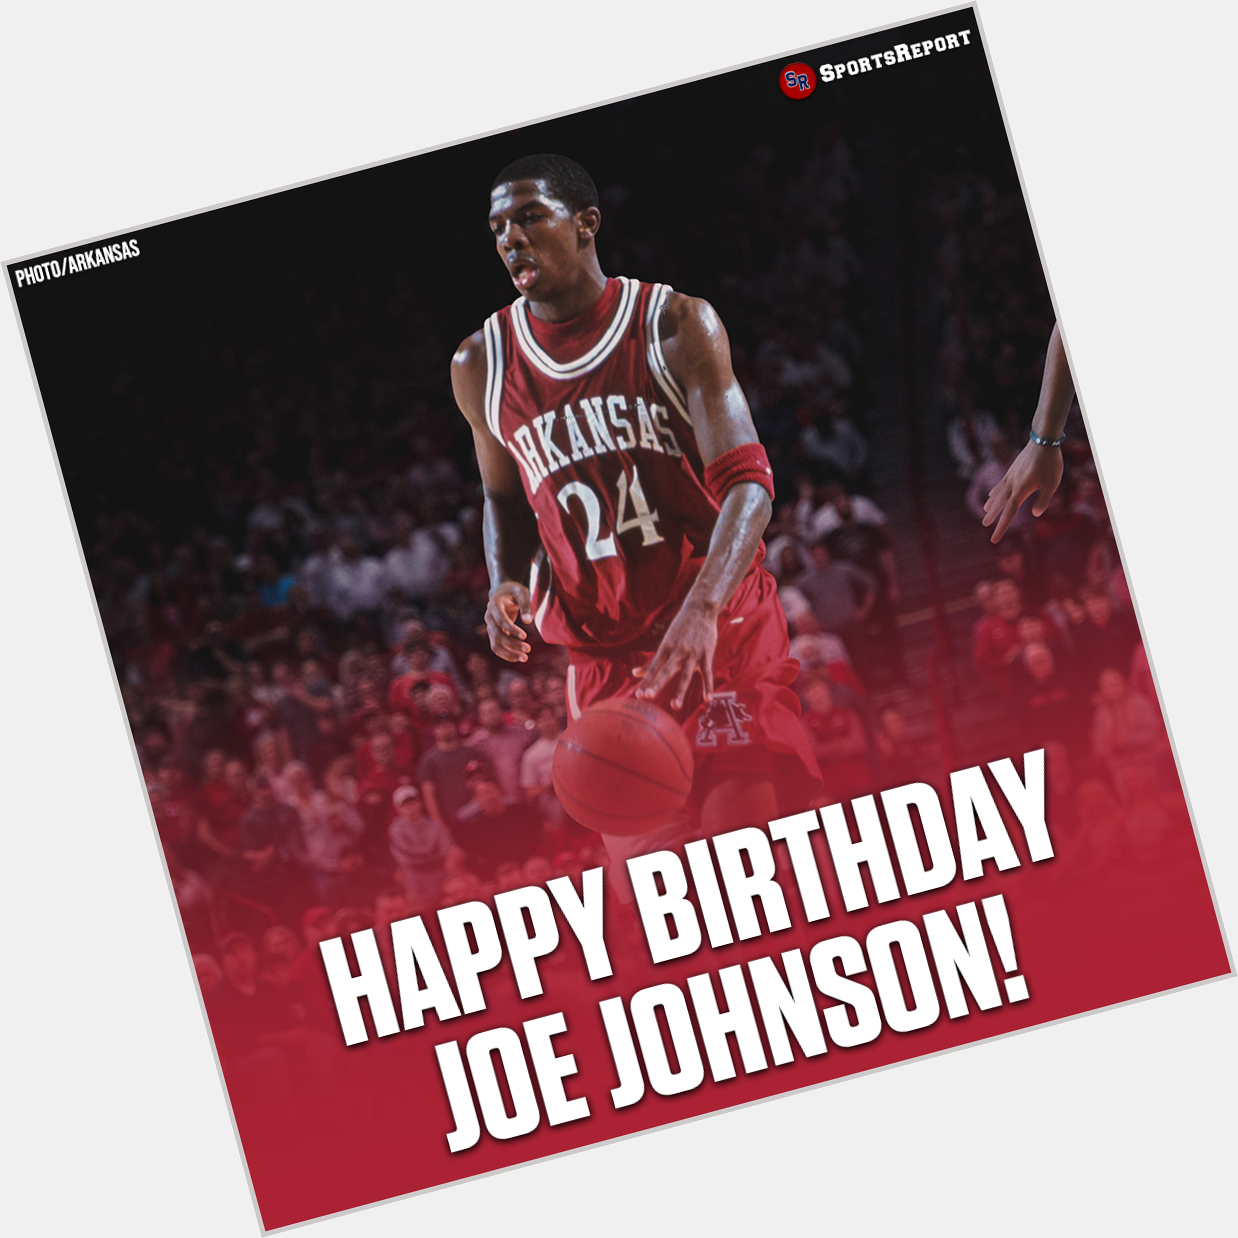  Fans, let\s wish great Joe Johnson a Happy Birthday! 